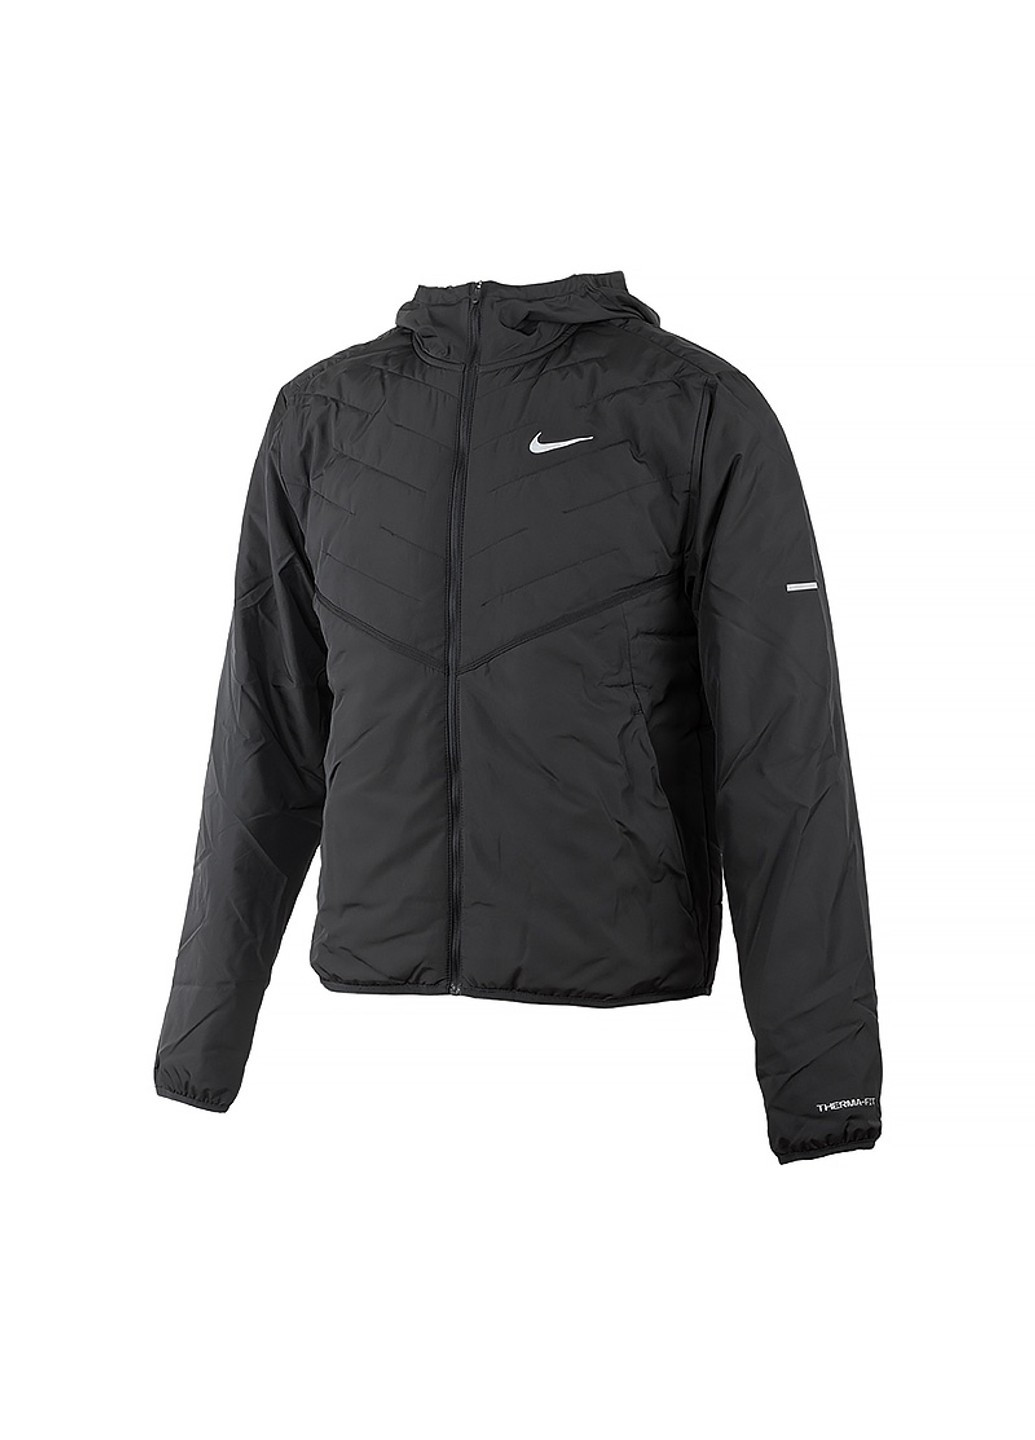 Черная демисезонная куртка m nk tf synfl rpl jkt Nike